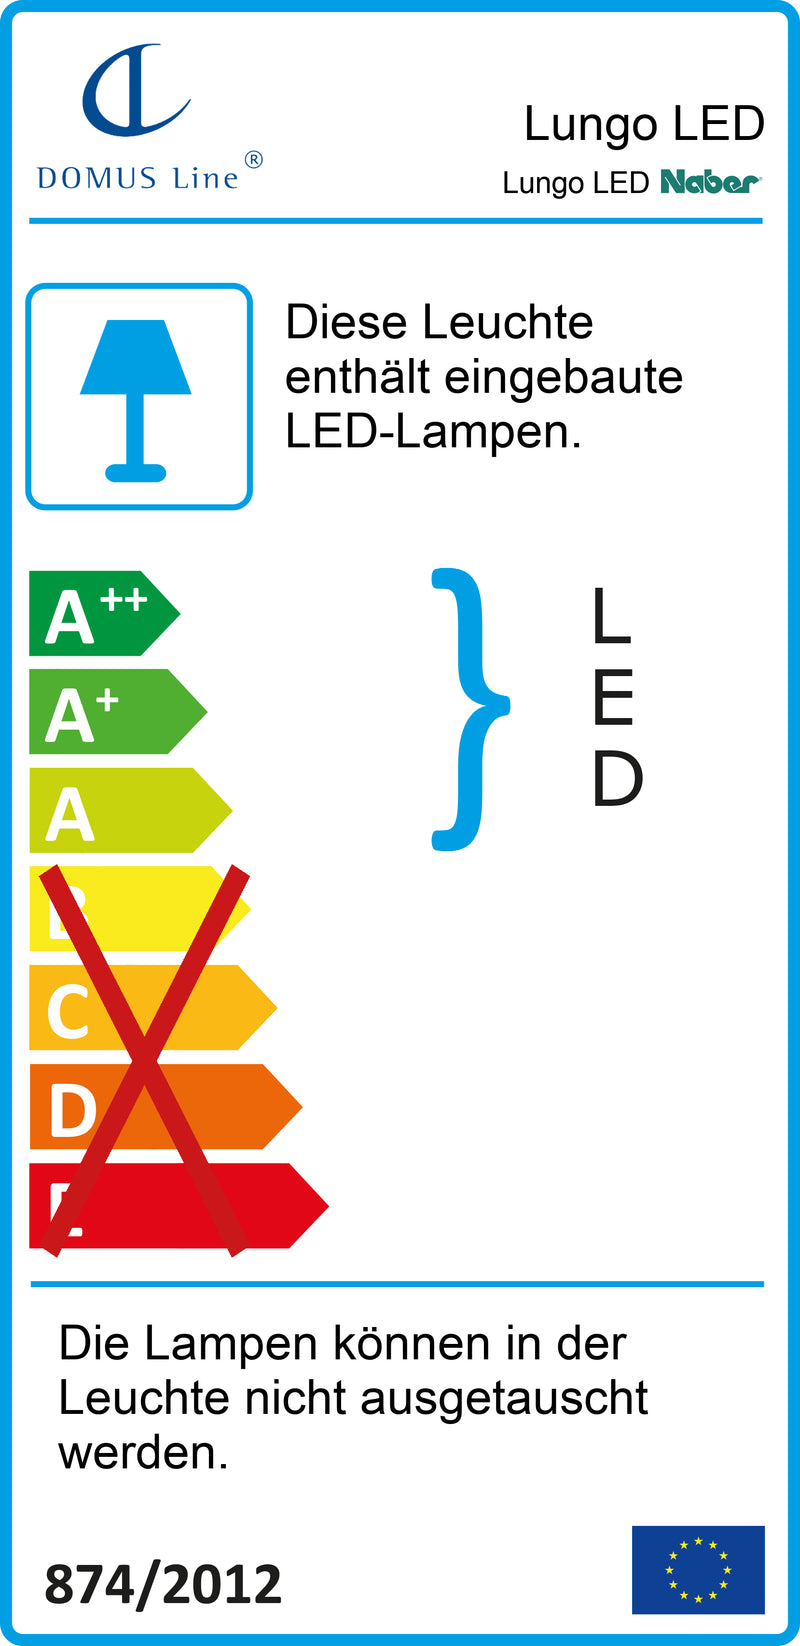 E-Label zu Zeichnung zu Lungo LED als Variante L 900 mm, 12,5 W, edelstahlfarbig von Naber GmbH in der Kategorie Lichttechnik in Österreich auf conceptshop.at